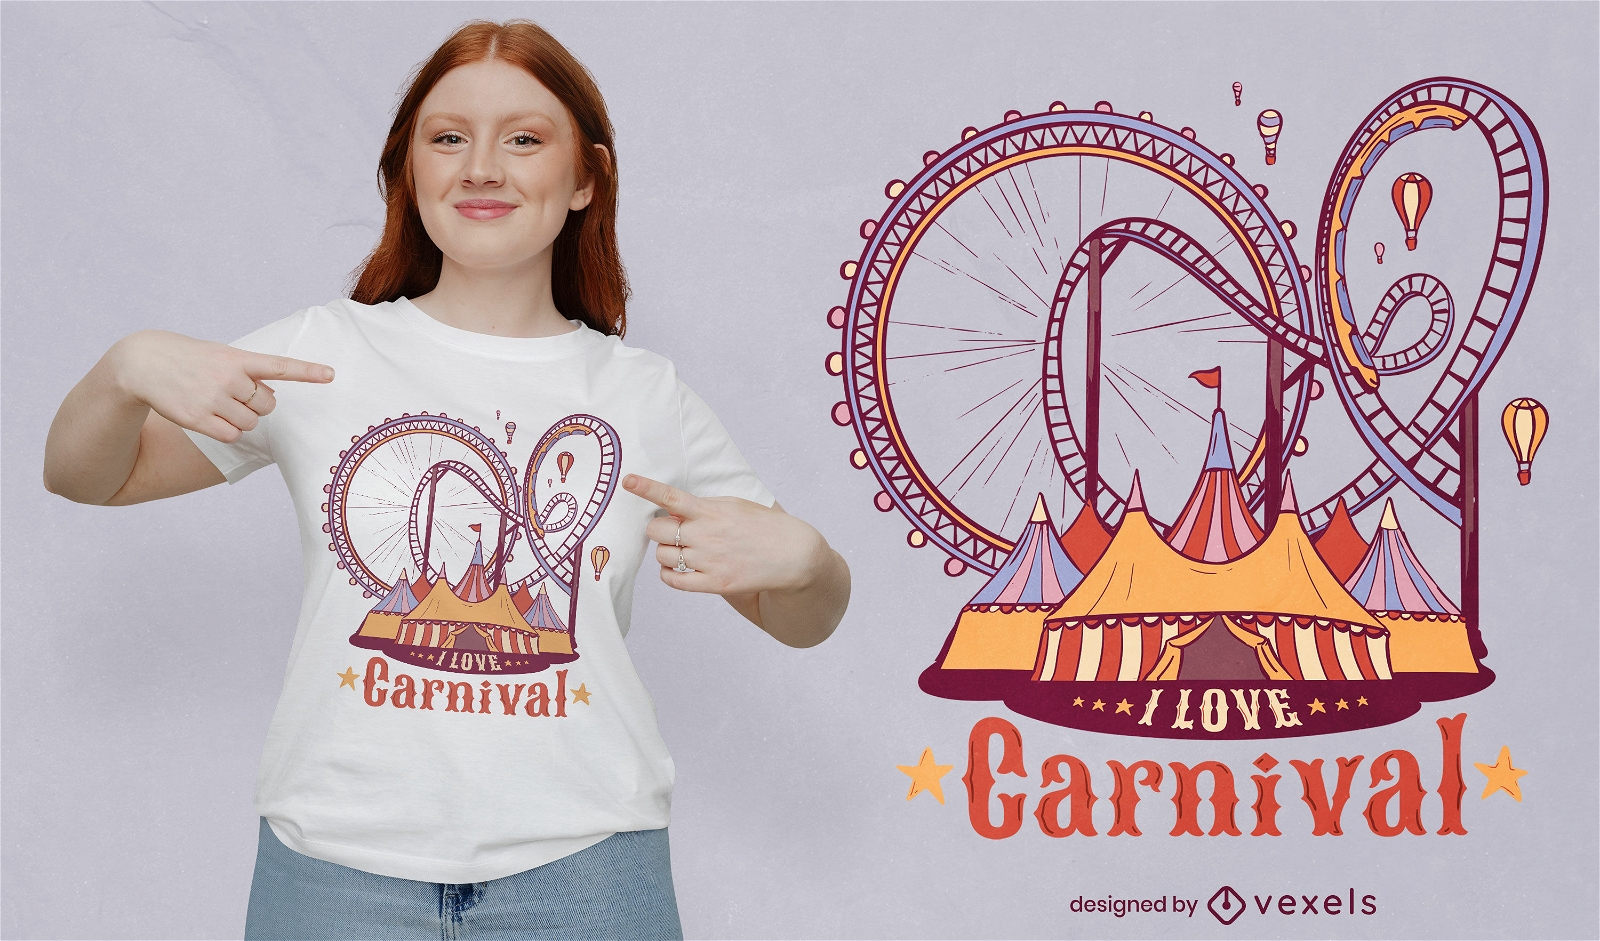 Me encanta el diseño de camiseta de carnaval.